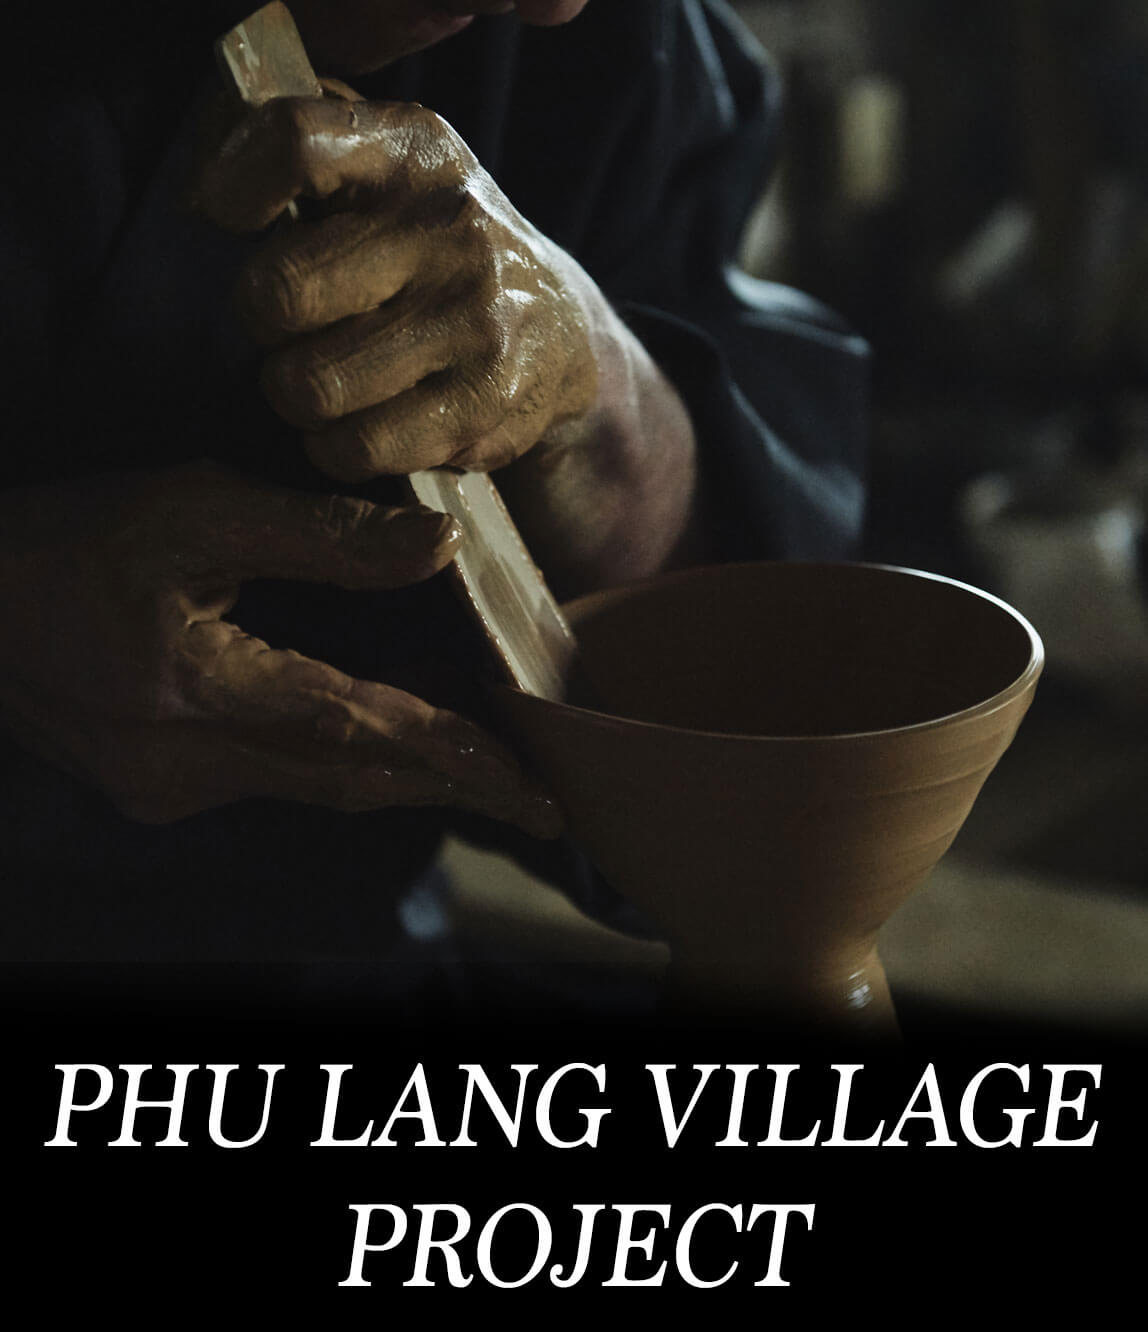 日本の伝統技術で世界を変える 小石原焼フーラン村プロジェクト